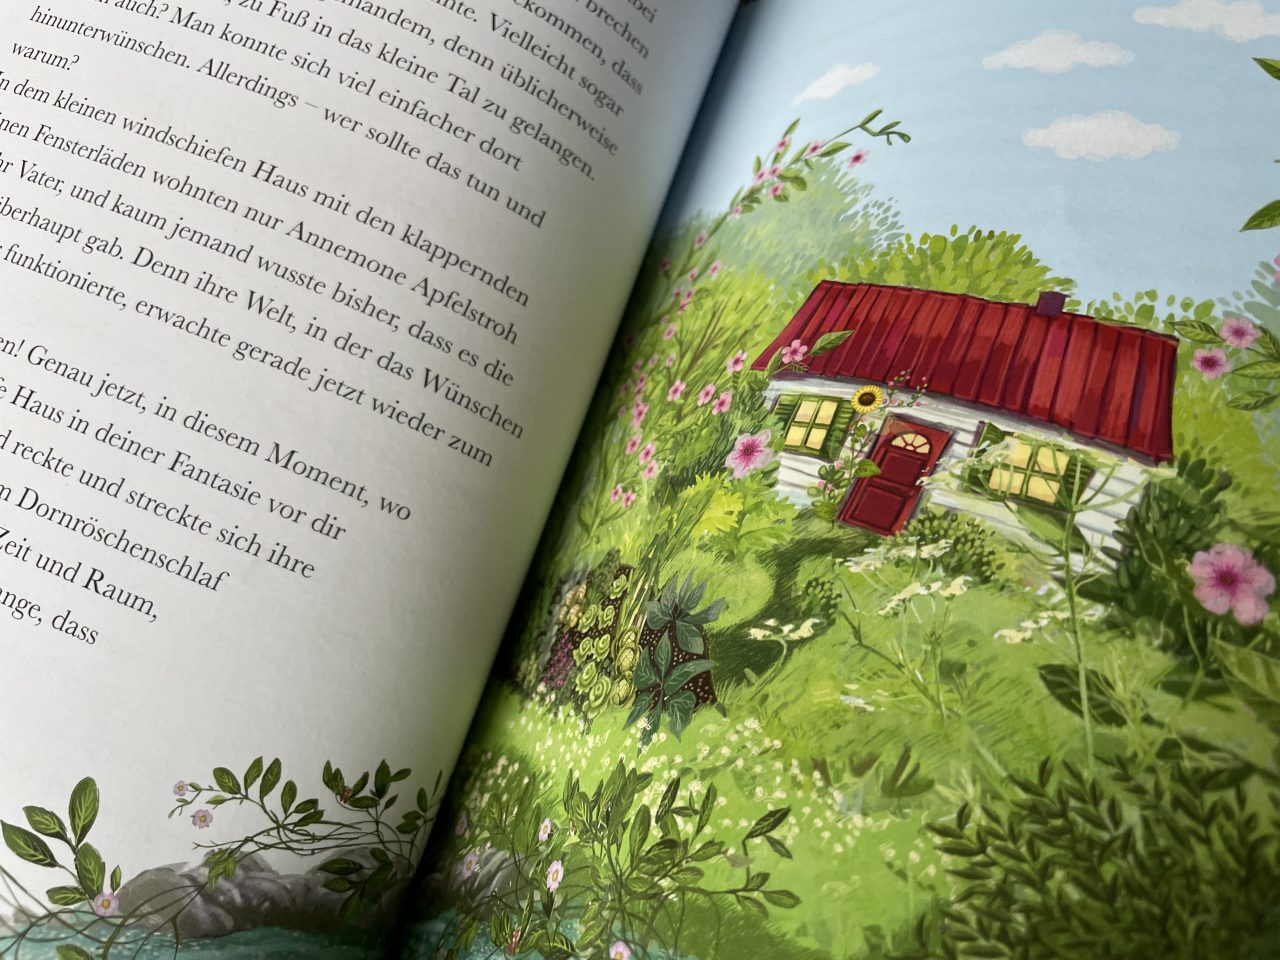 aufgeklapptes Kinderbuch "Annemone Apfelstroh" - links ist Text und rechts ein Bild von einem Häuschen mit rotem Dach im Grünen